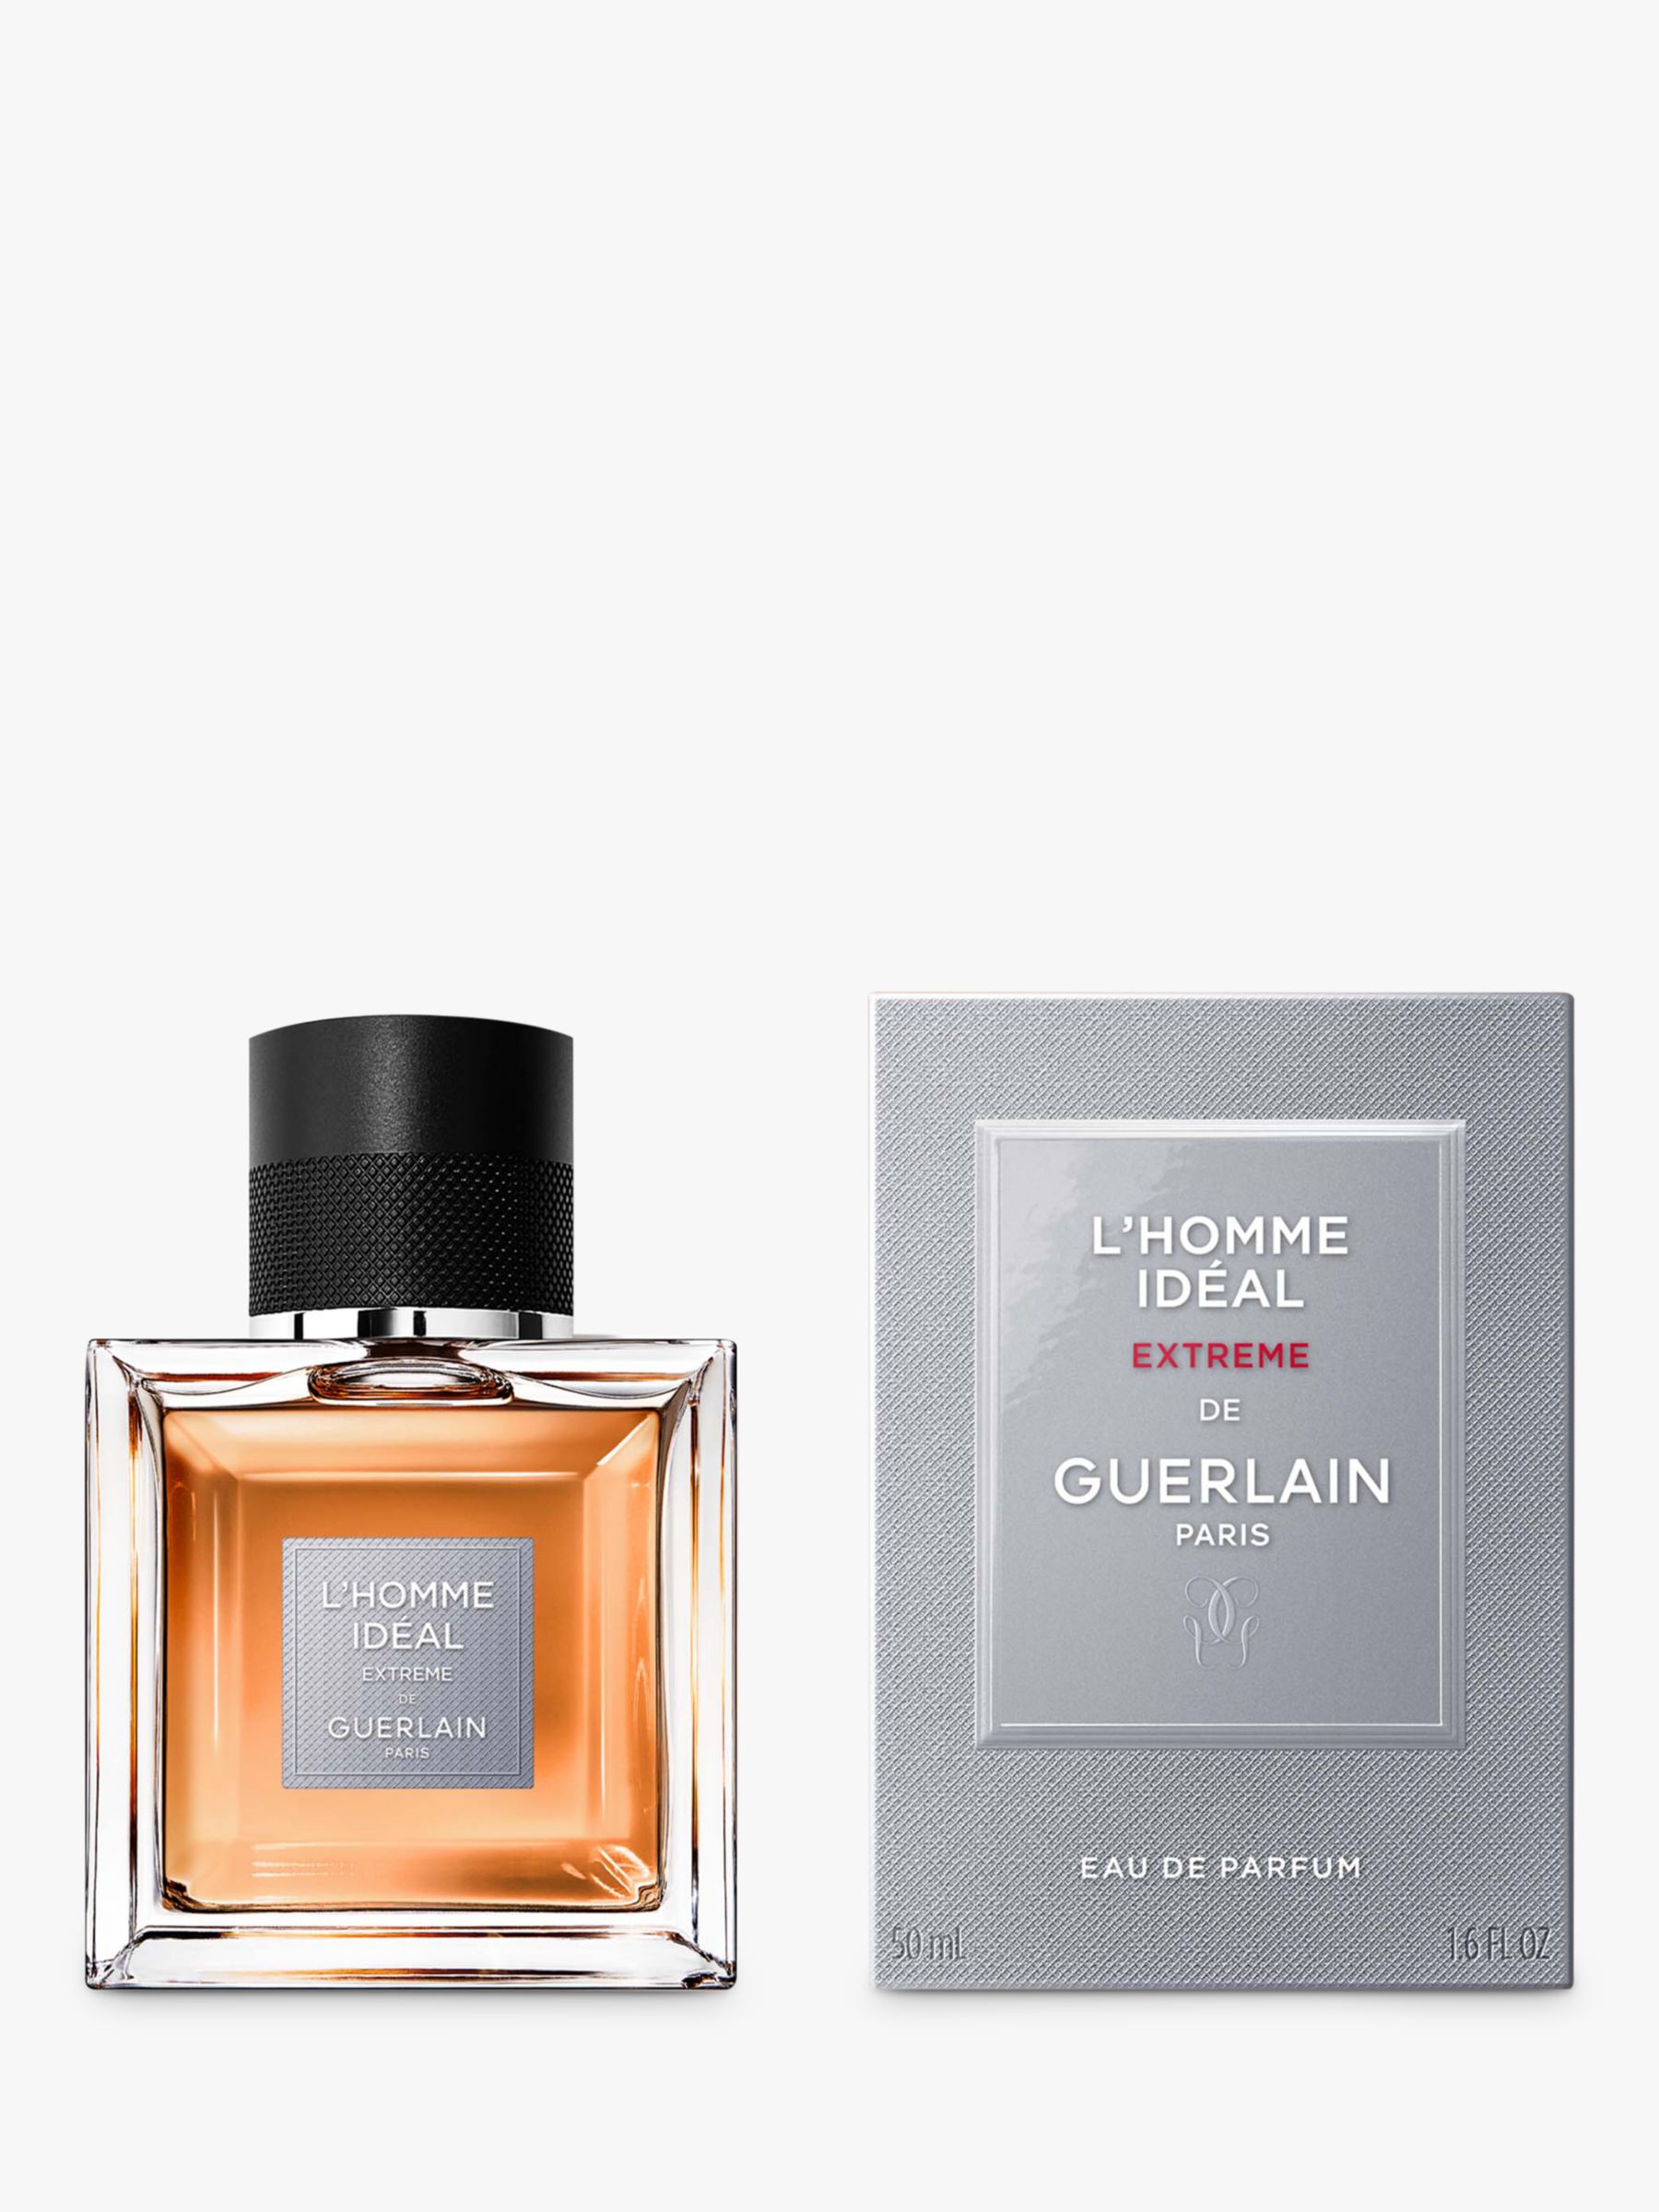 Guerlain L'Homme Idéal Extrême Eau de Parfum, 50ml at John Lewis